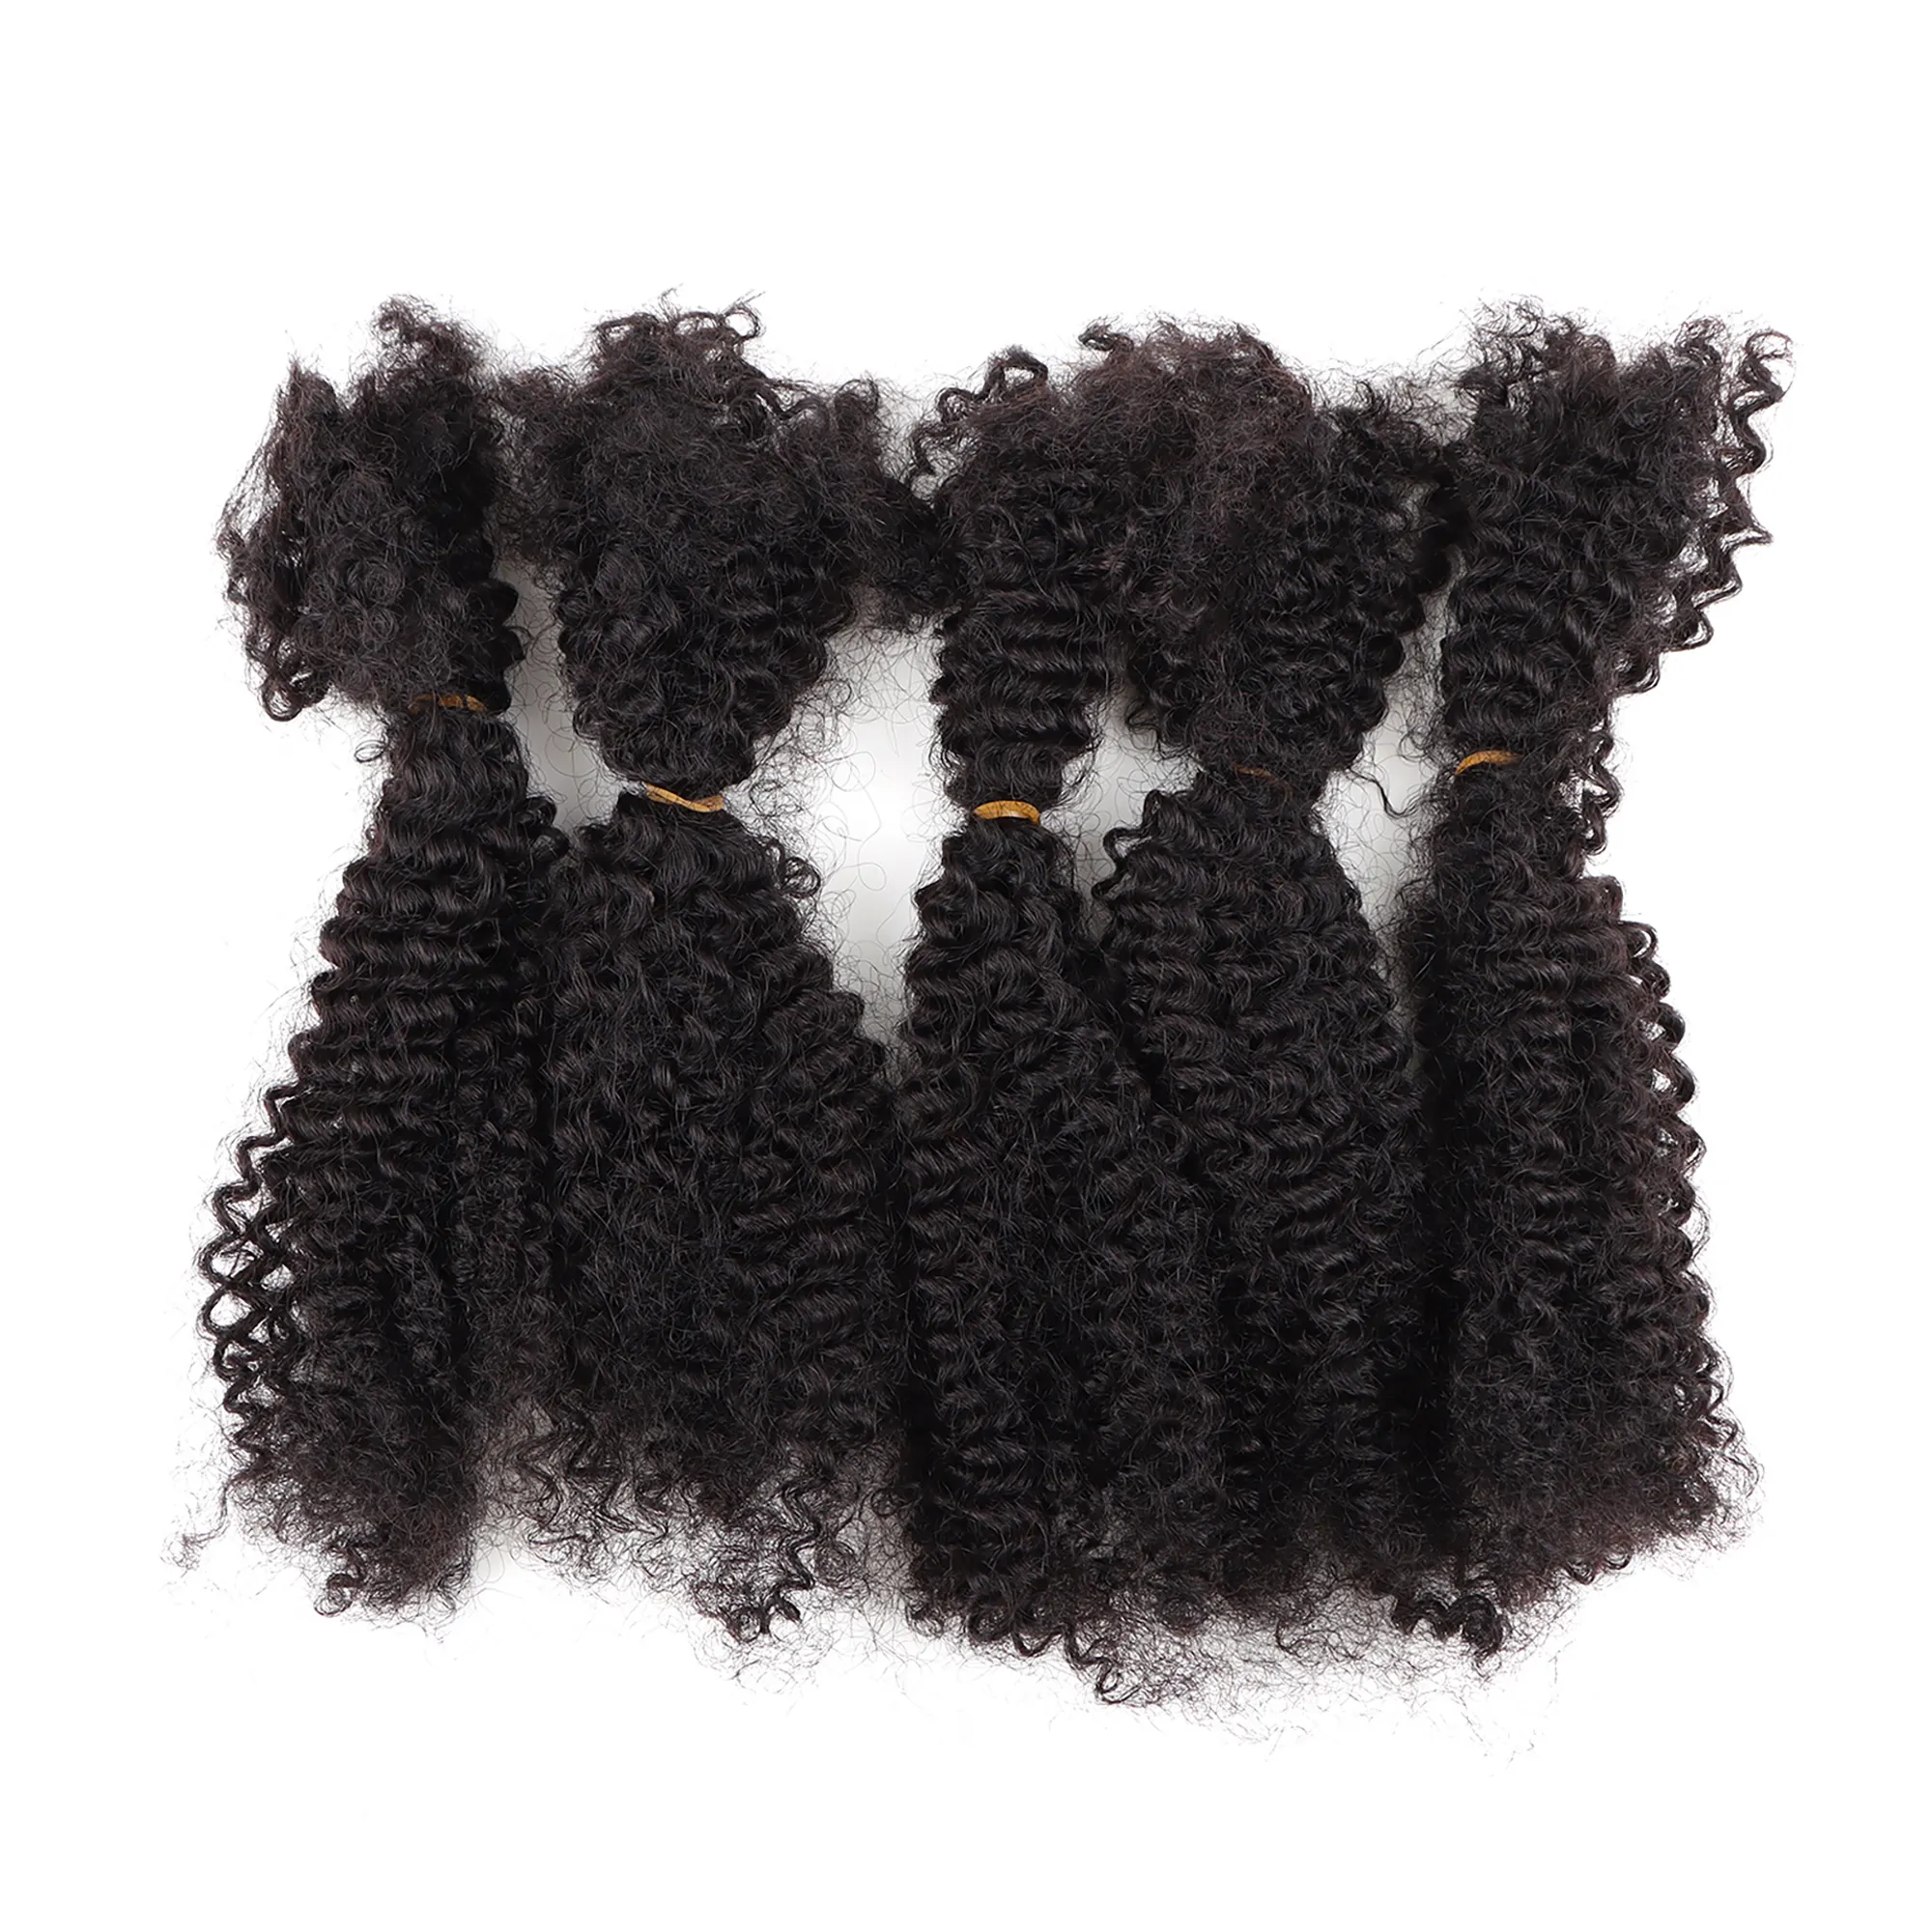 [Vast Dreads] Großhandel Afro Curl Marley Zopf Haar 4b 4c 100% menschliches brasilia nisches Flechthaar afro verworrene Masse menschliches Haar